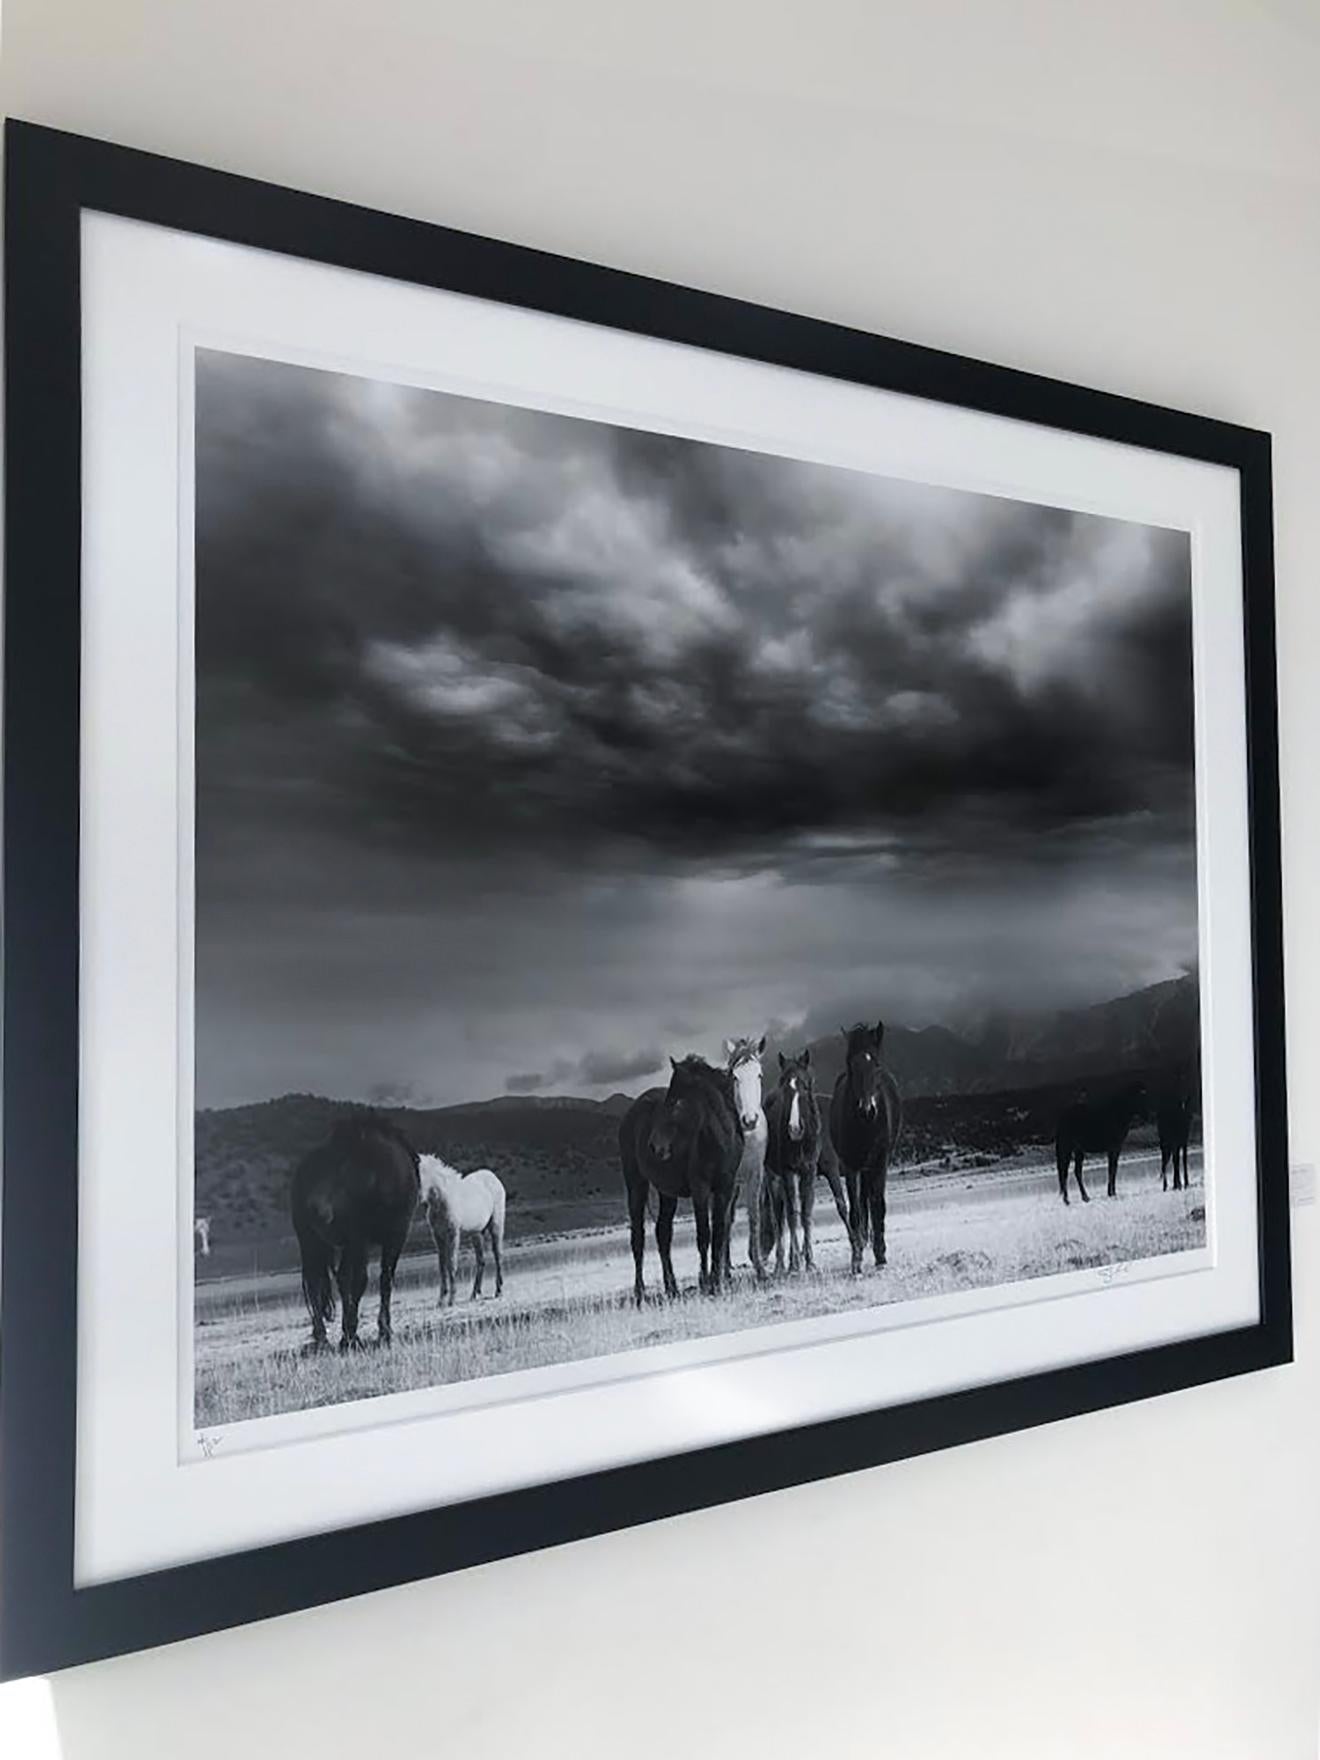 Il s'agit d'une photographie contemporaine en noir et blanc de mustangs sauvages américains. 
